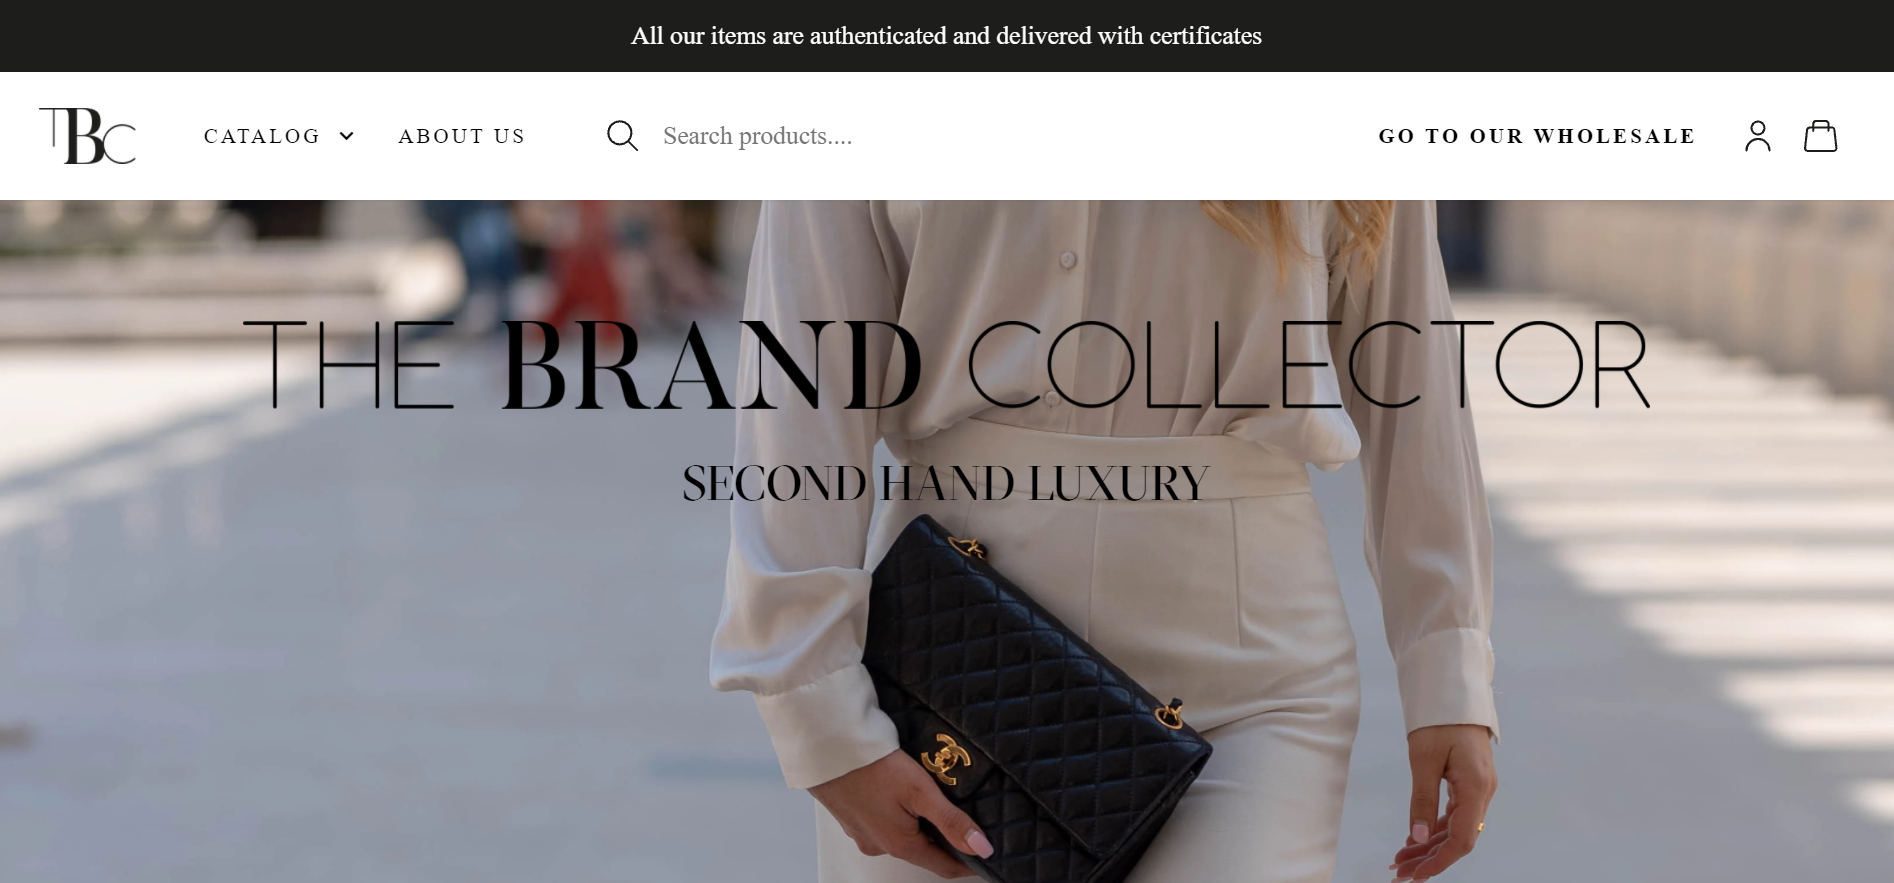 法国初创公司 The Brand Collector 推出二手奢侈品批发网站